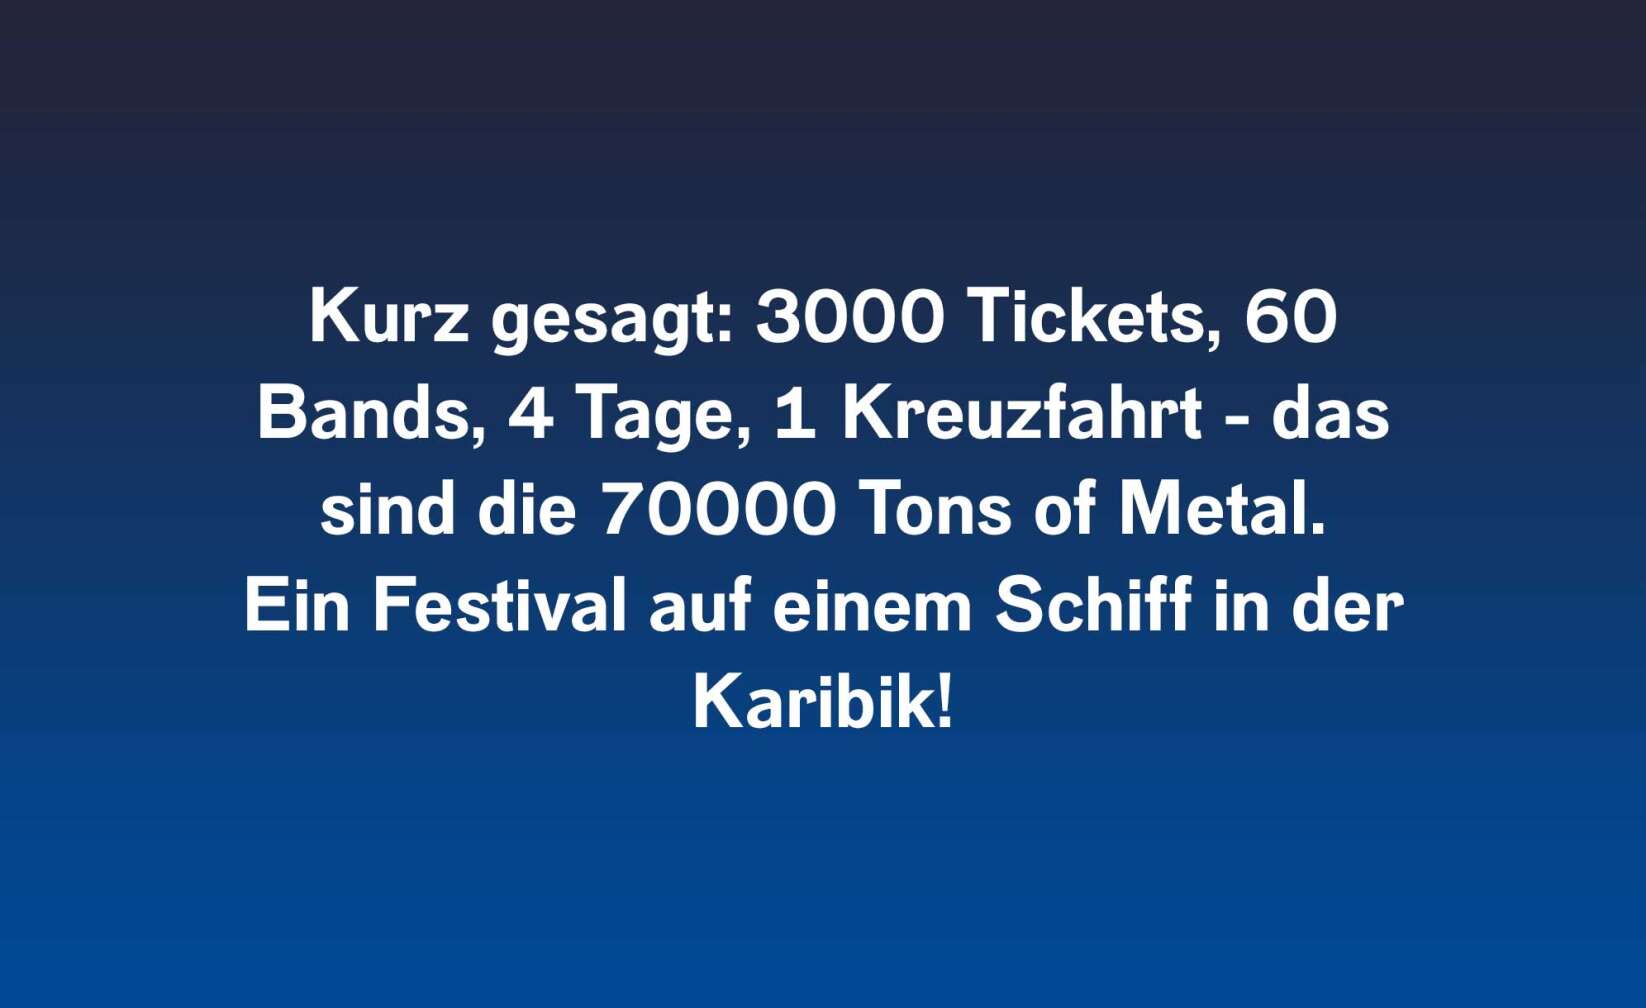 Kurz gesagt: 3000 Tickets, 60 Bands, 4 Tage, 1 Kreuzfahrt - das sind die 70000 Tons of Metal. Ein Festival auf einem Schiff in der Karibik!